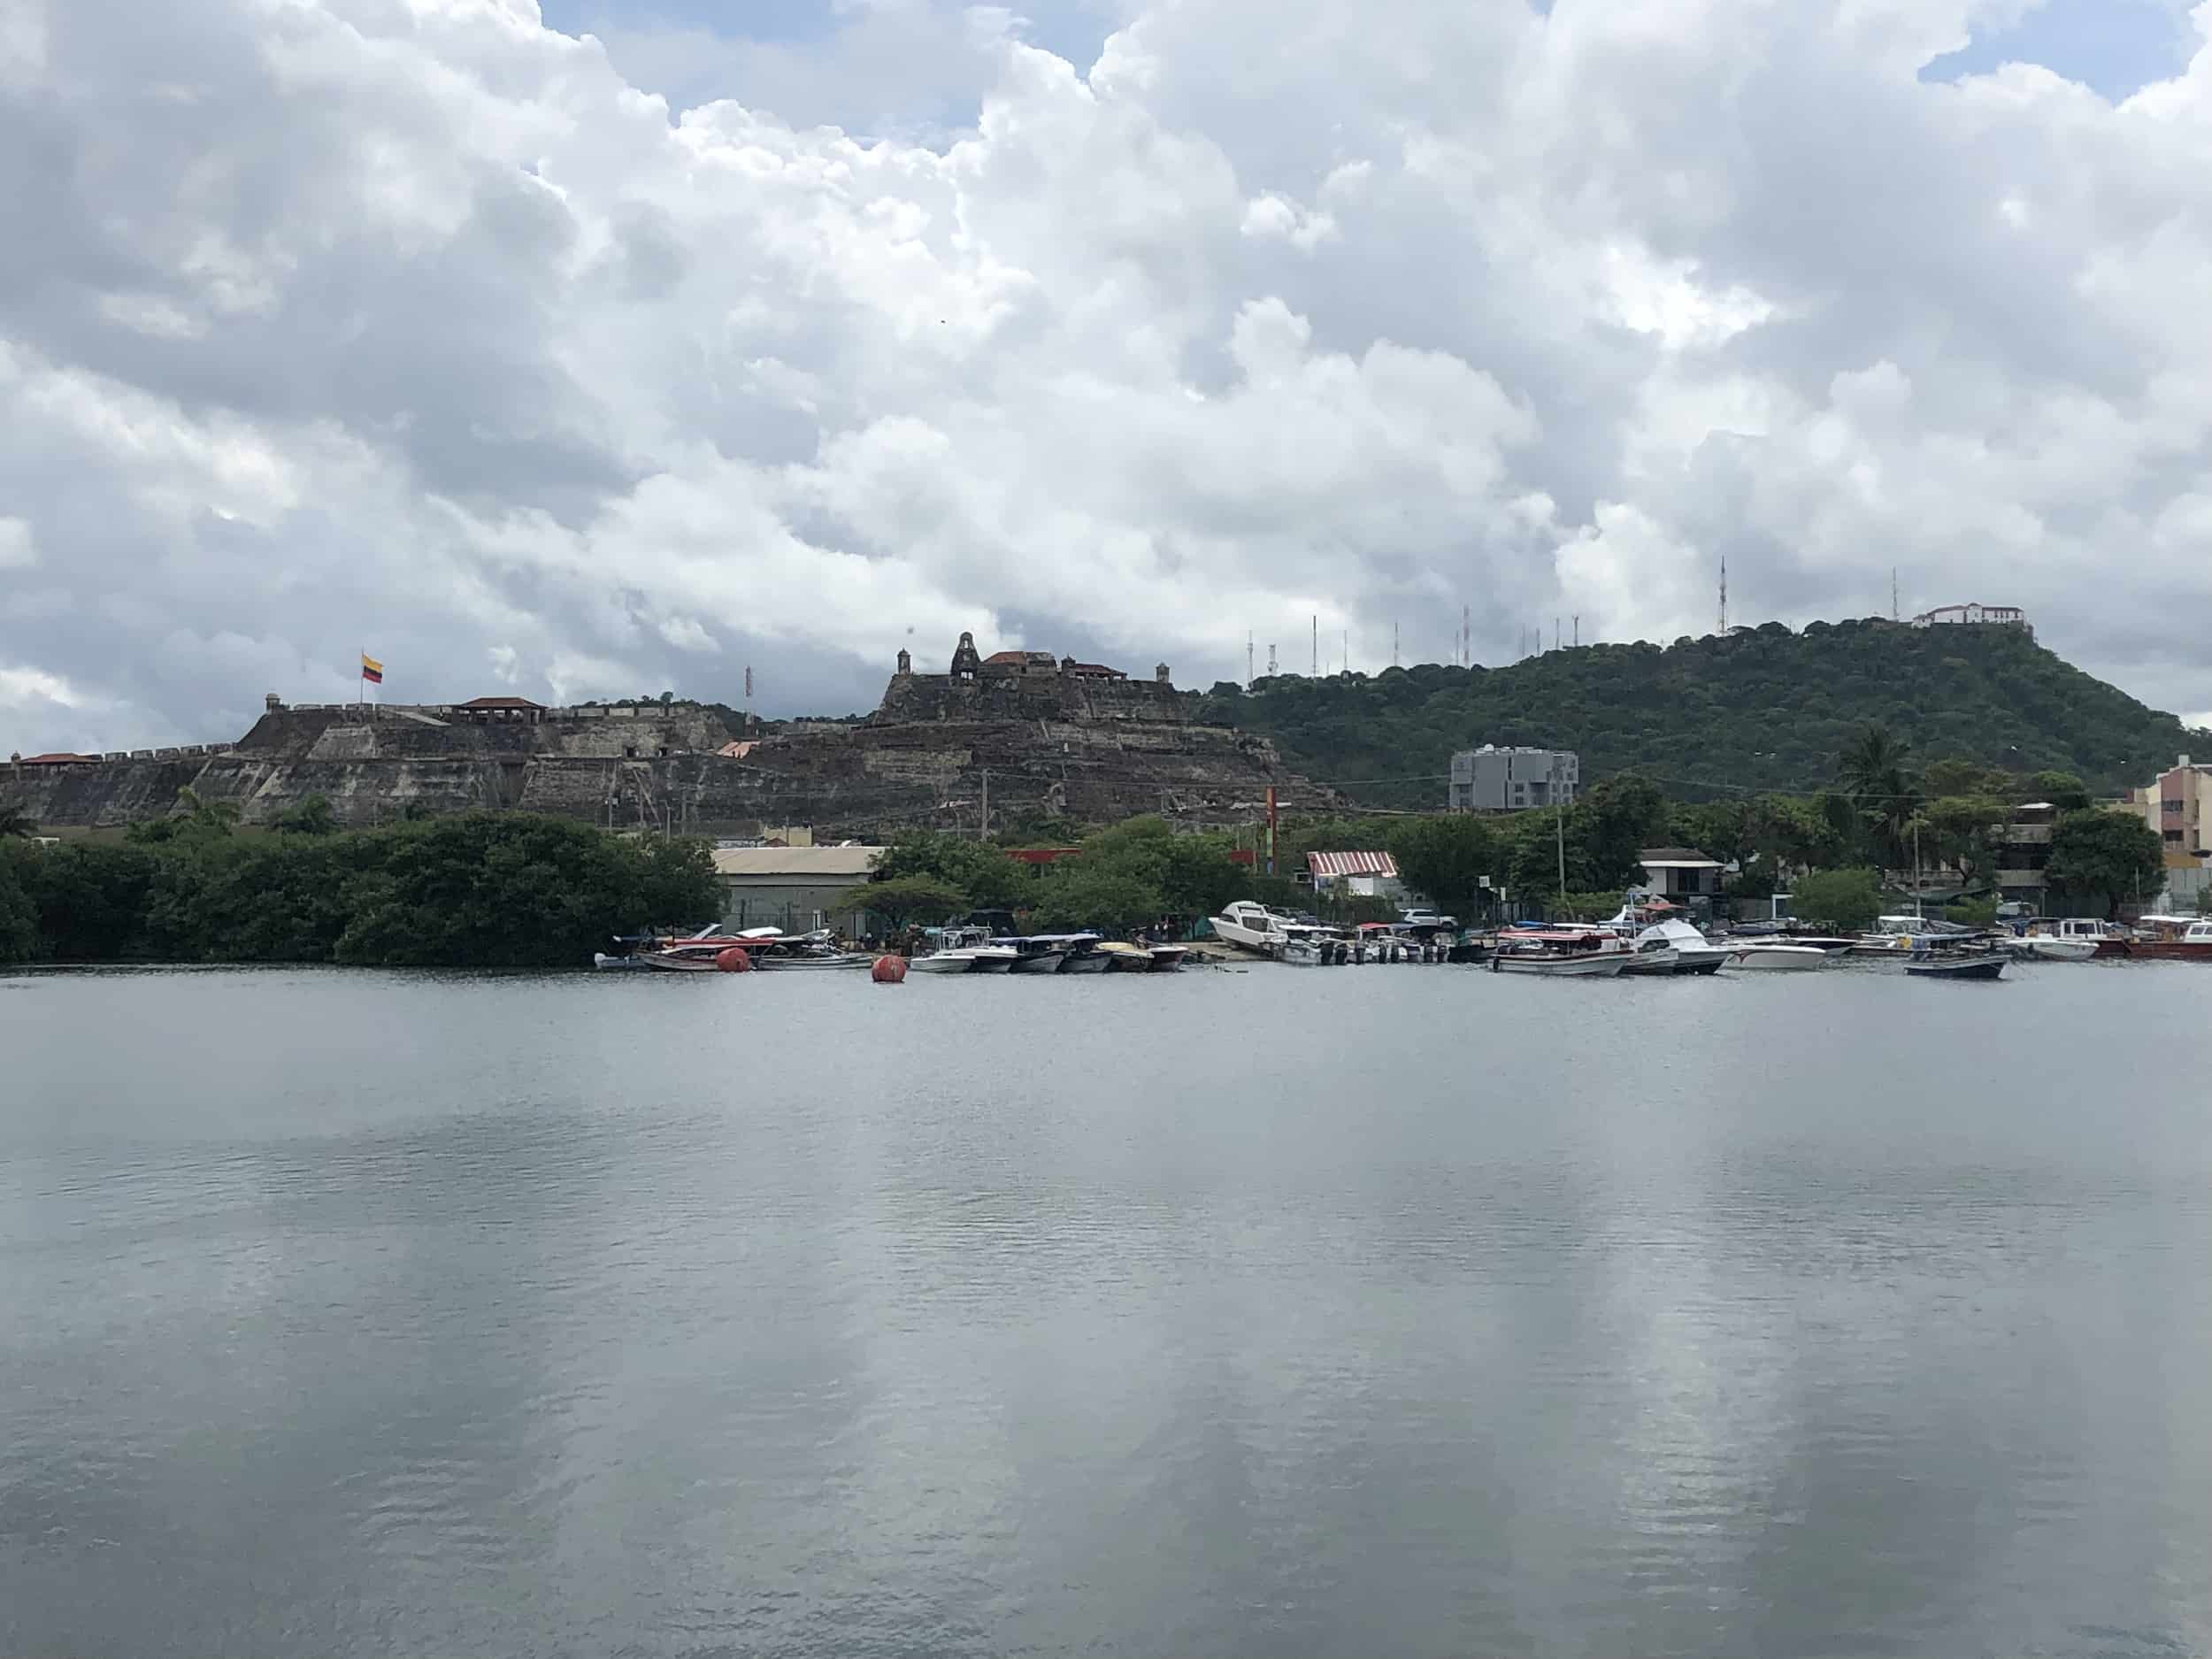 View of Castillo San Felipe and La Popa